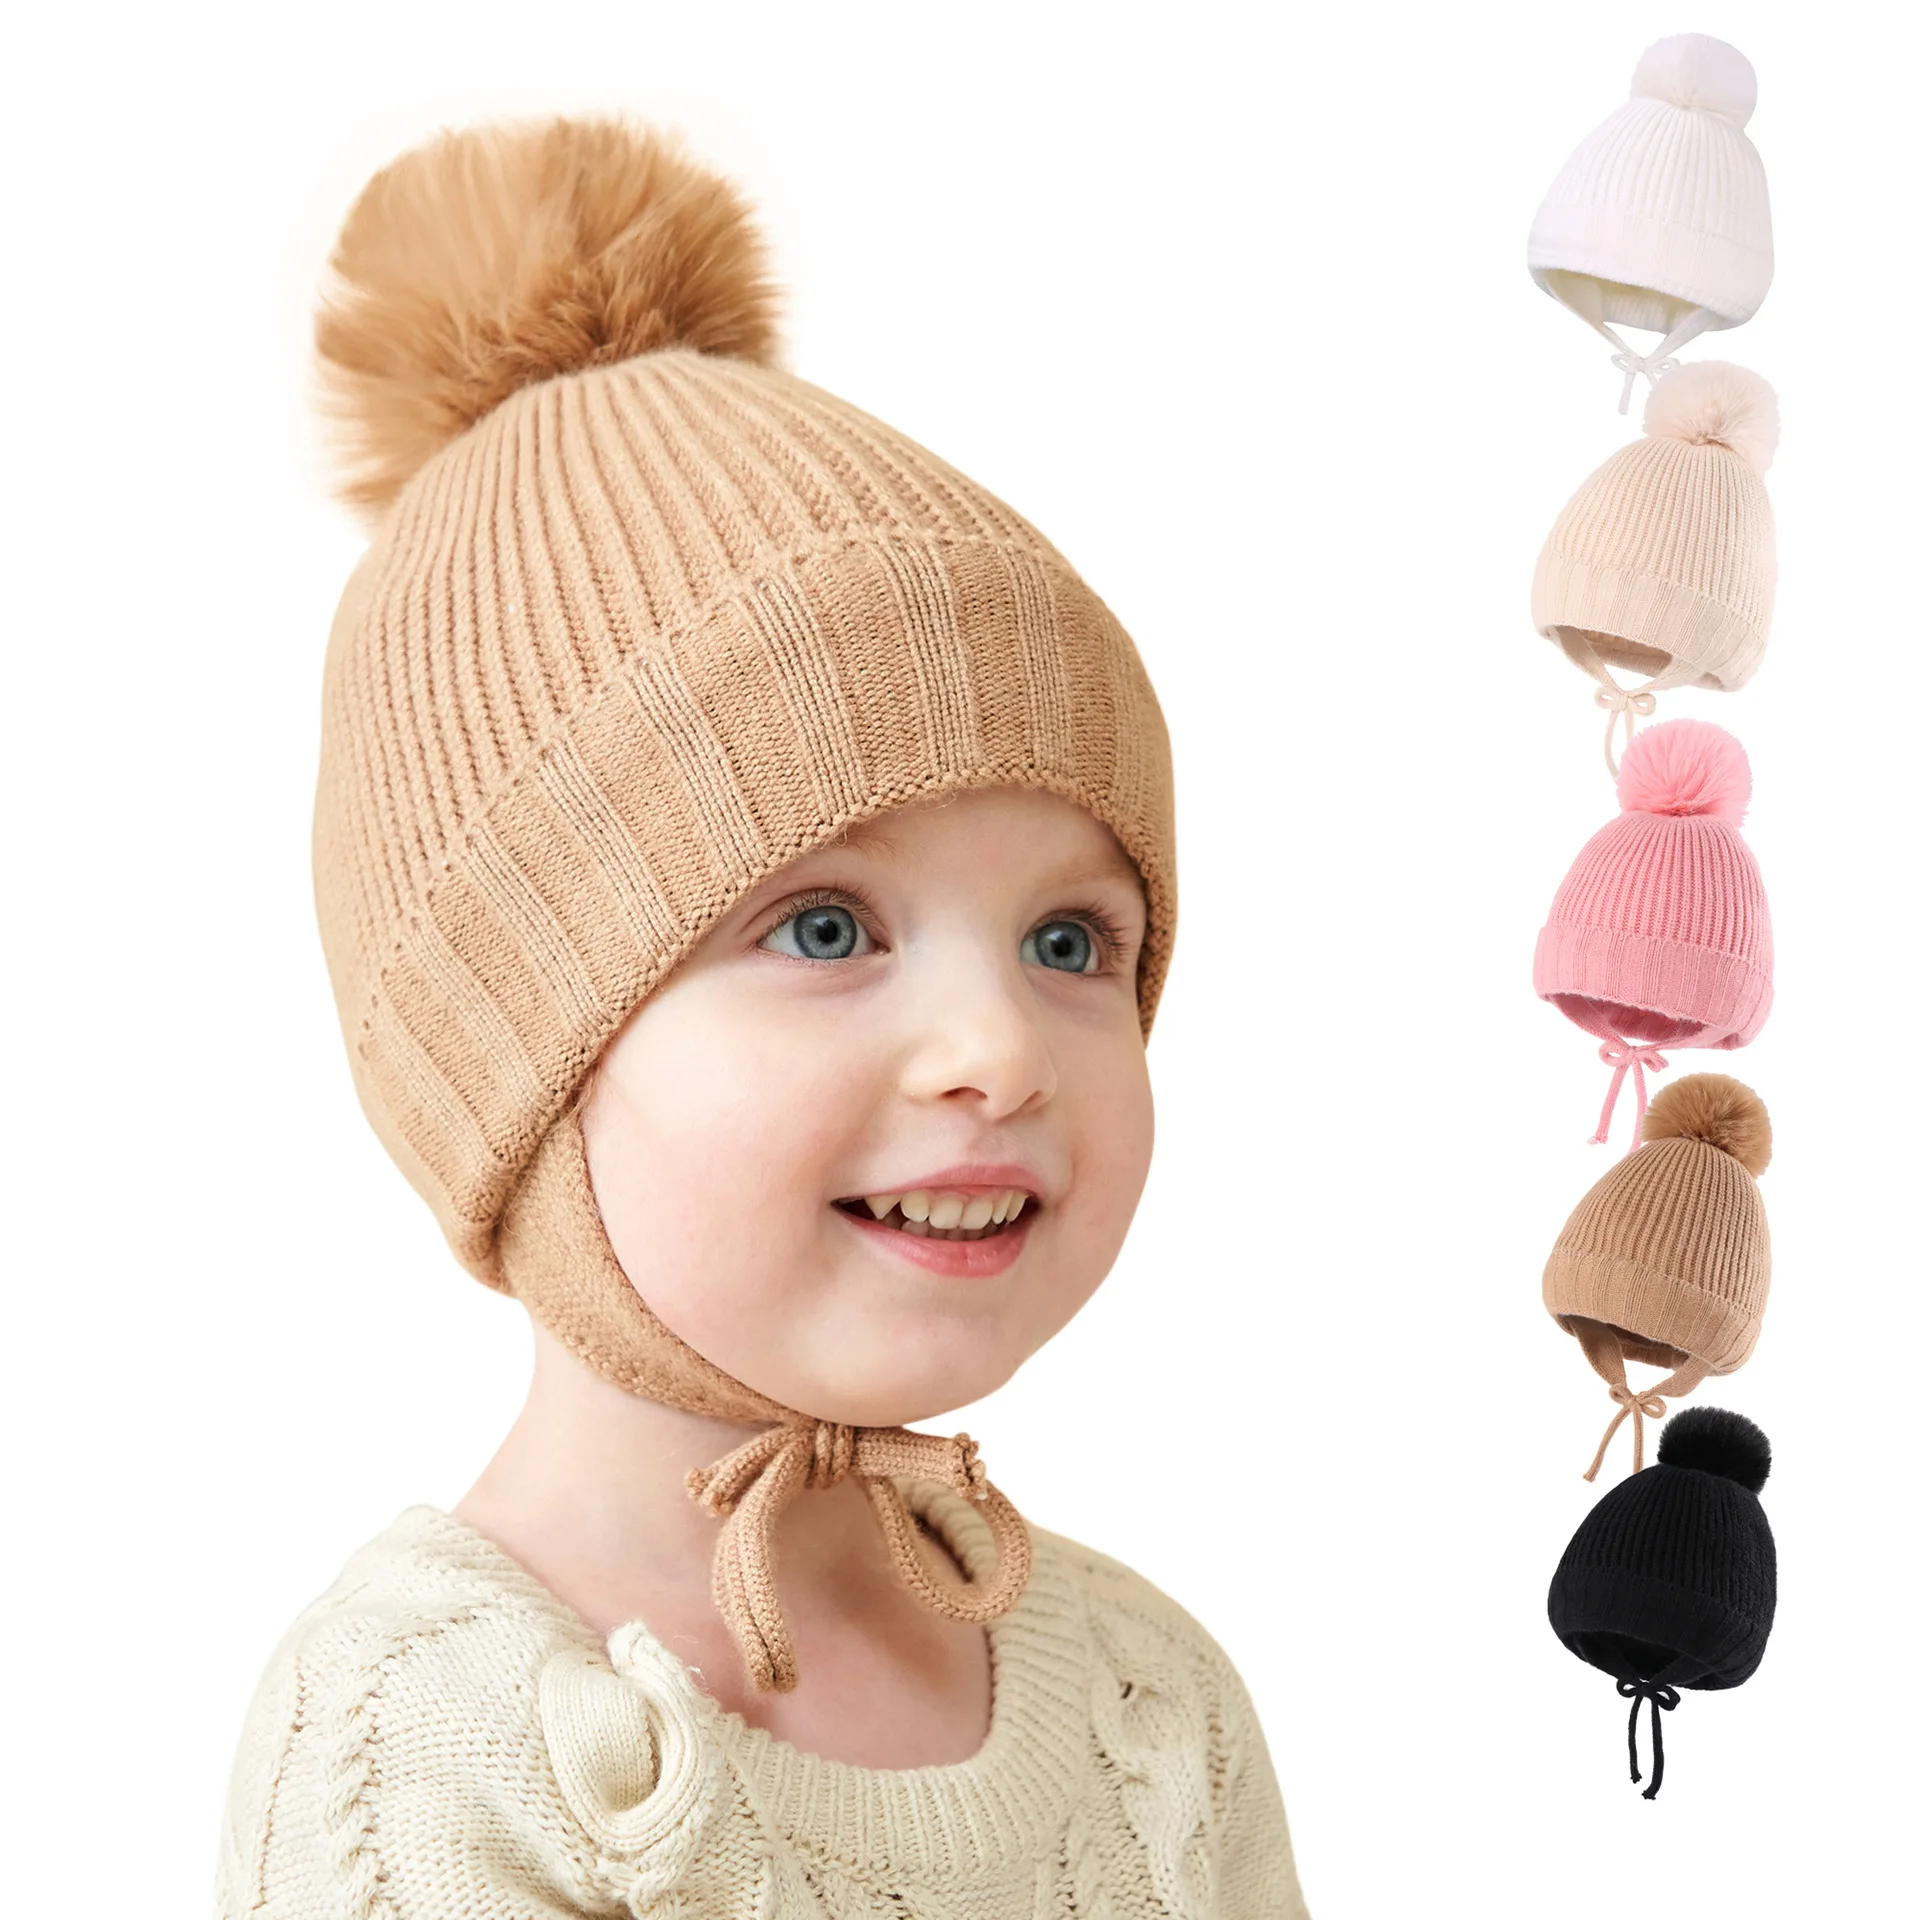 Вязаные вещи: как тепло и красиво одеть ребенка к зиме